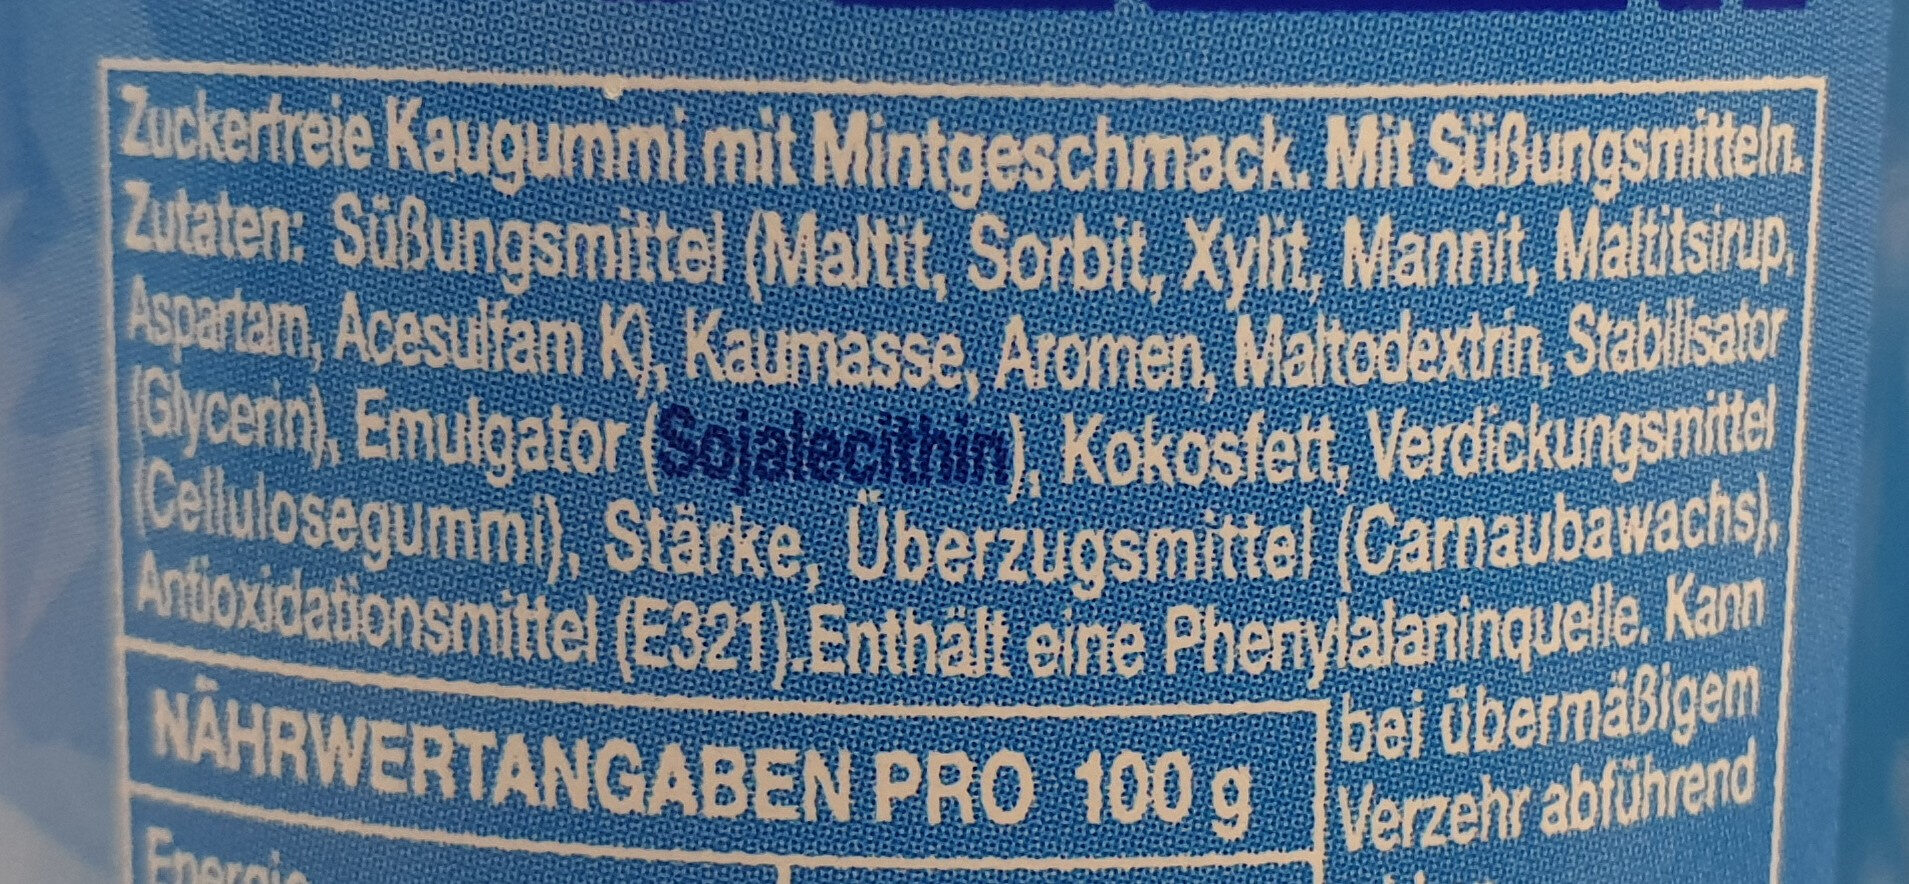 Peppermint - Ingredients - de